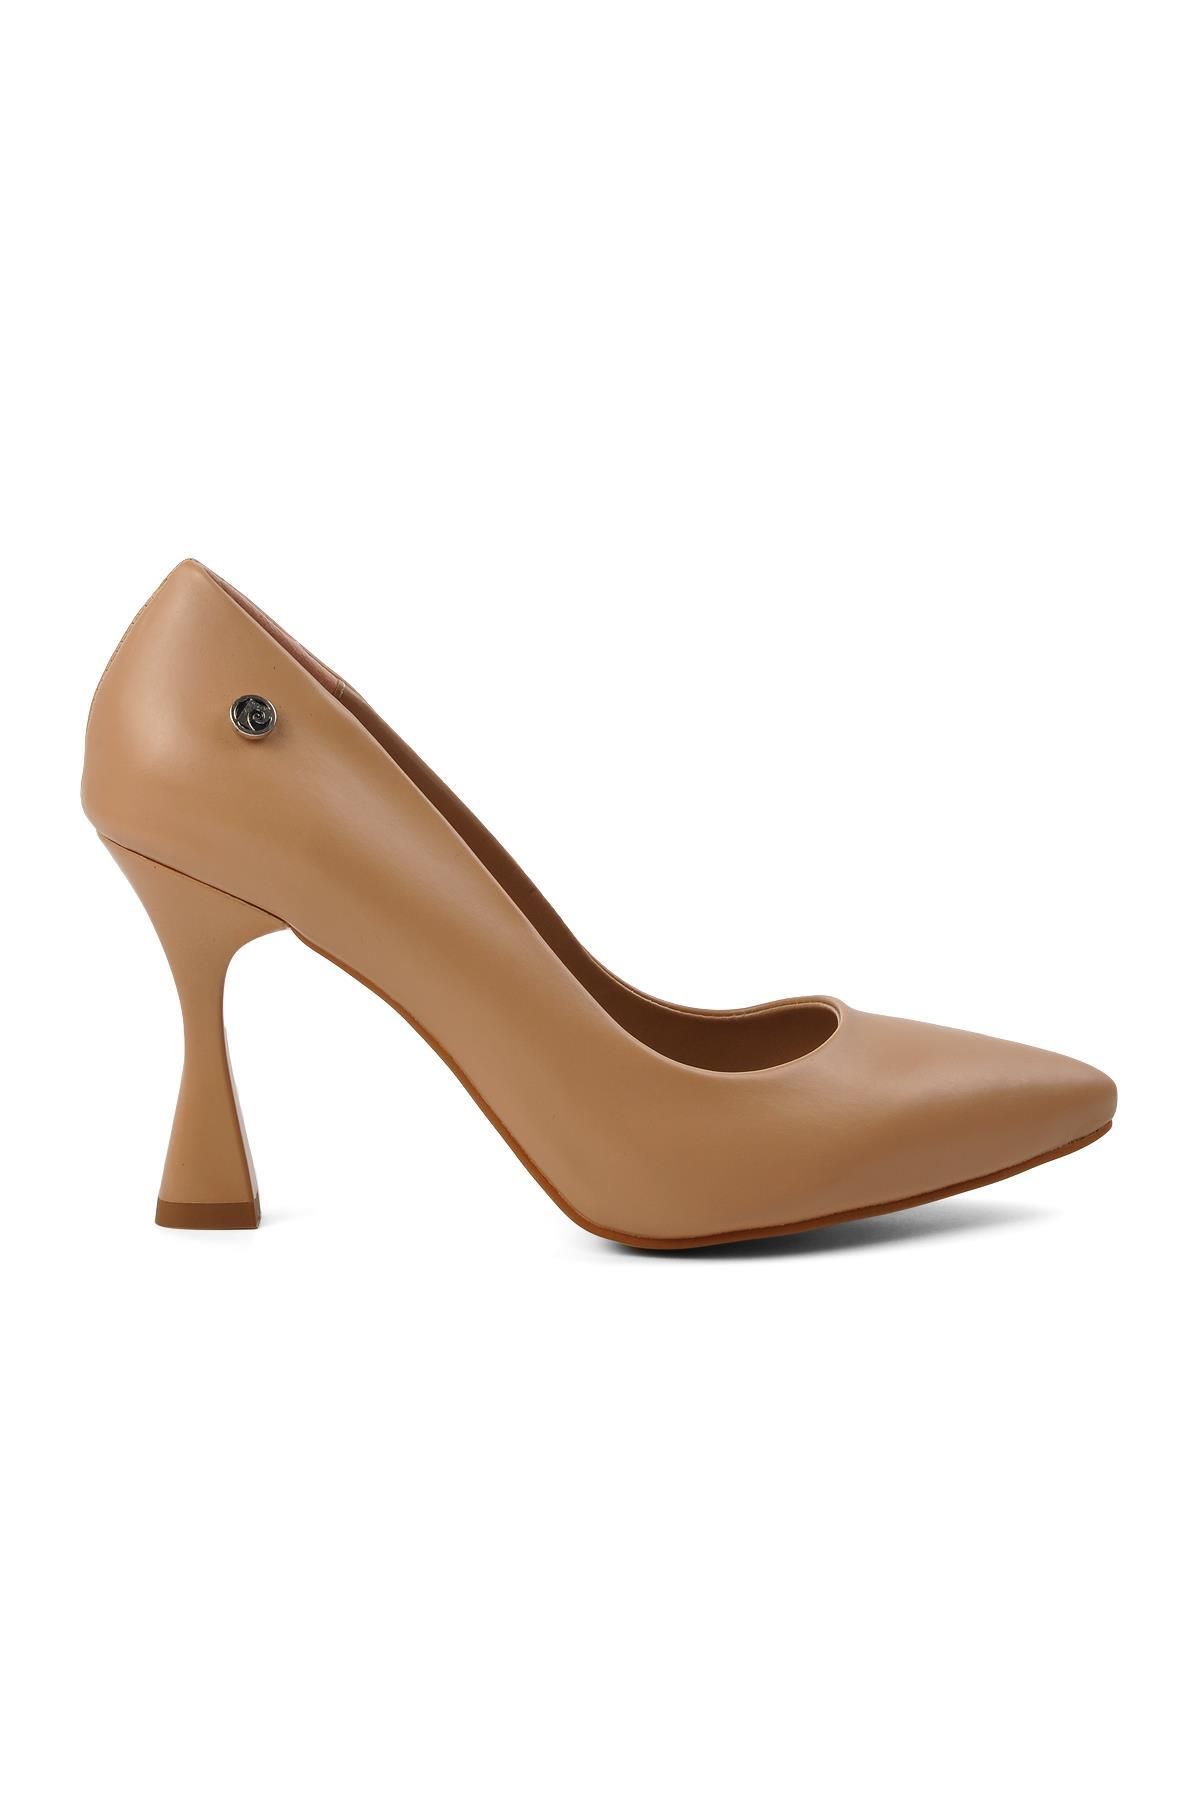 Pierre Cardin Pc-52281 Bej Kadın Topuklu Ayakkabı Dar Kalıp